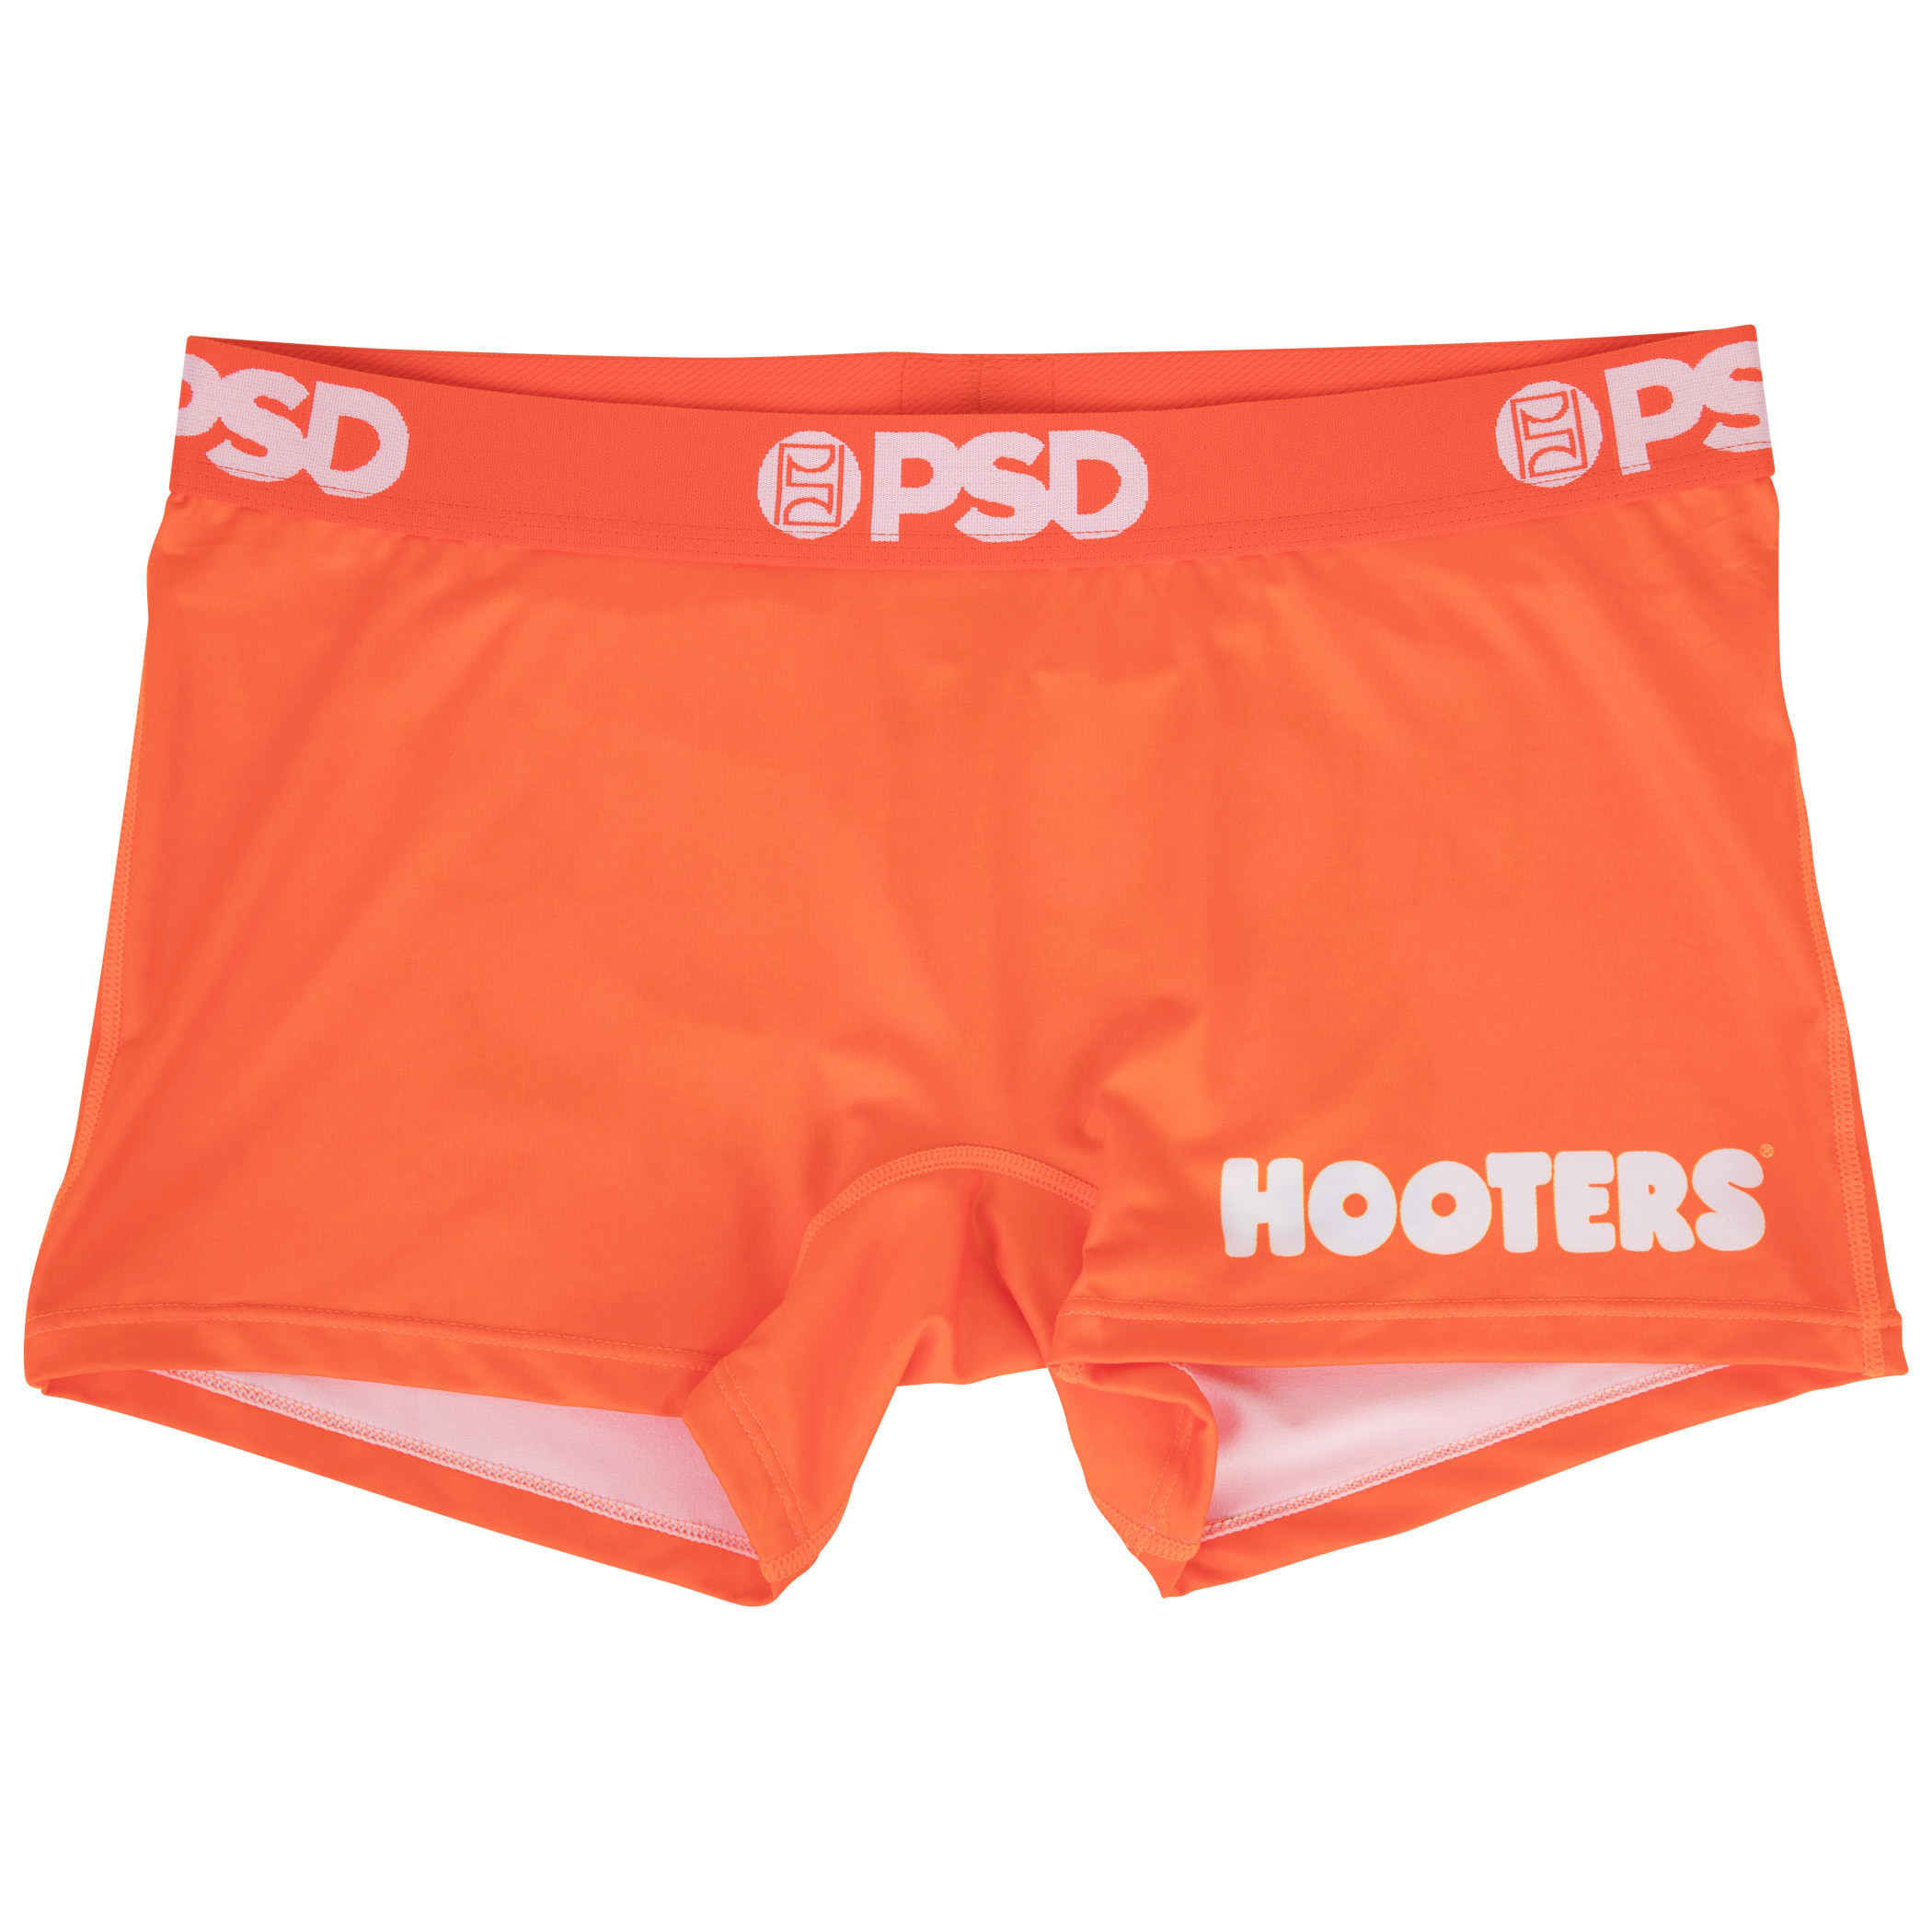 Real Hooters uniform shorts!!